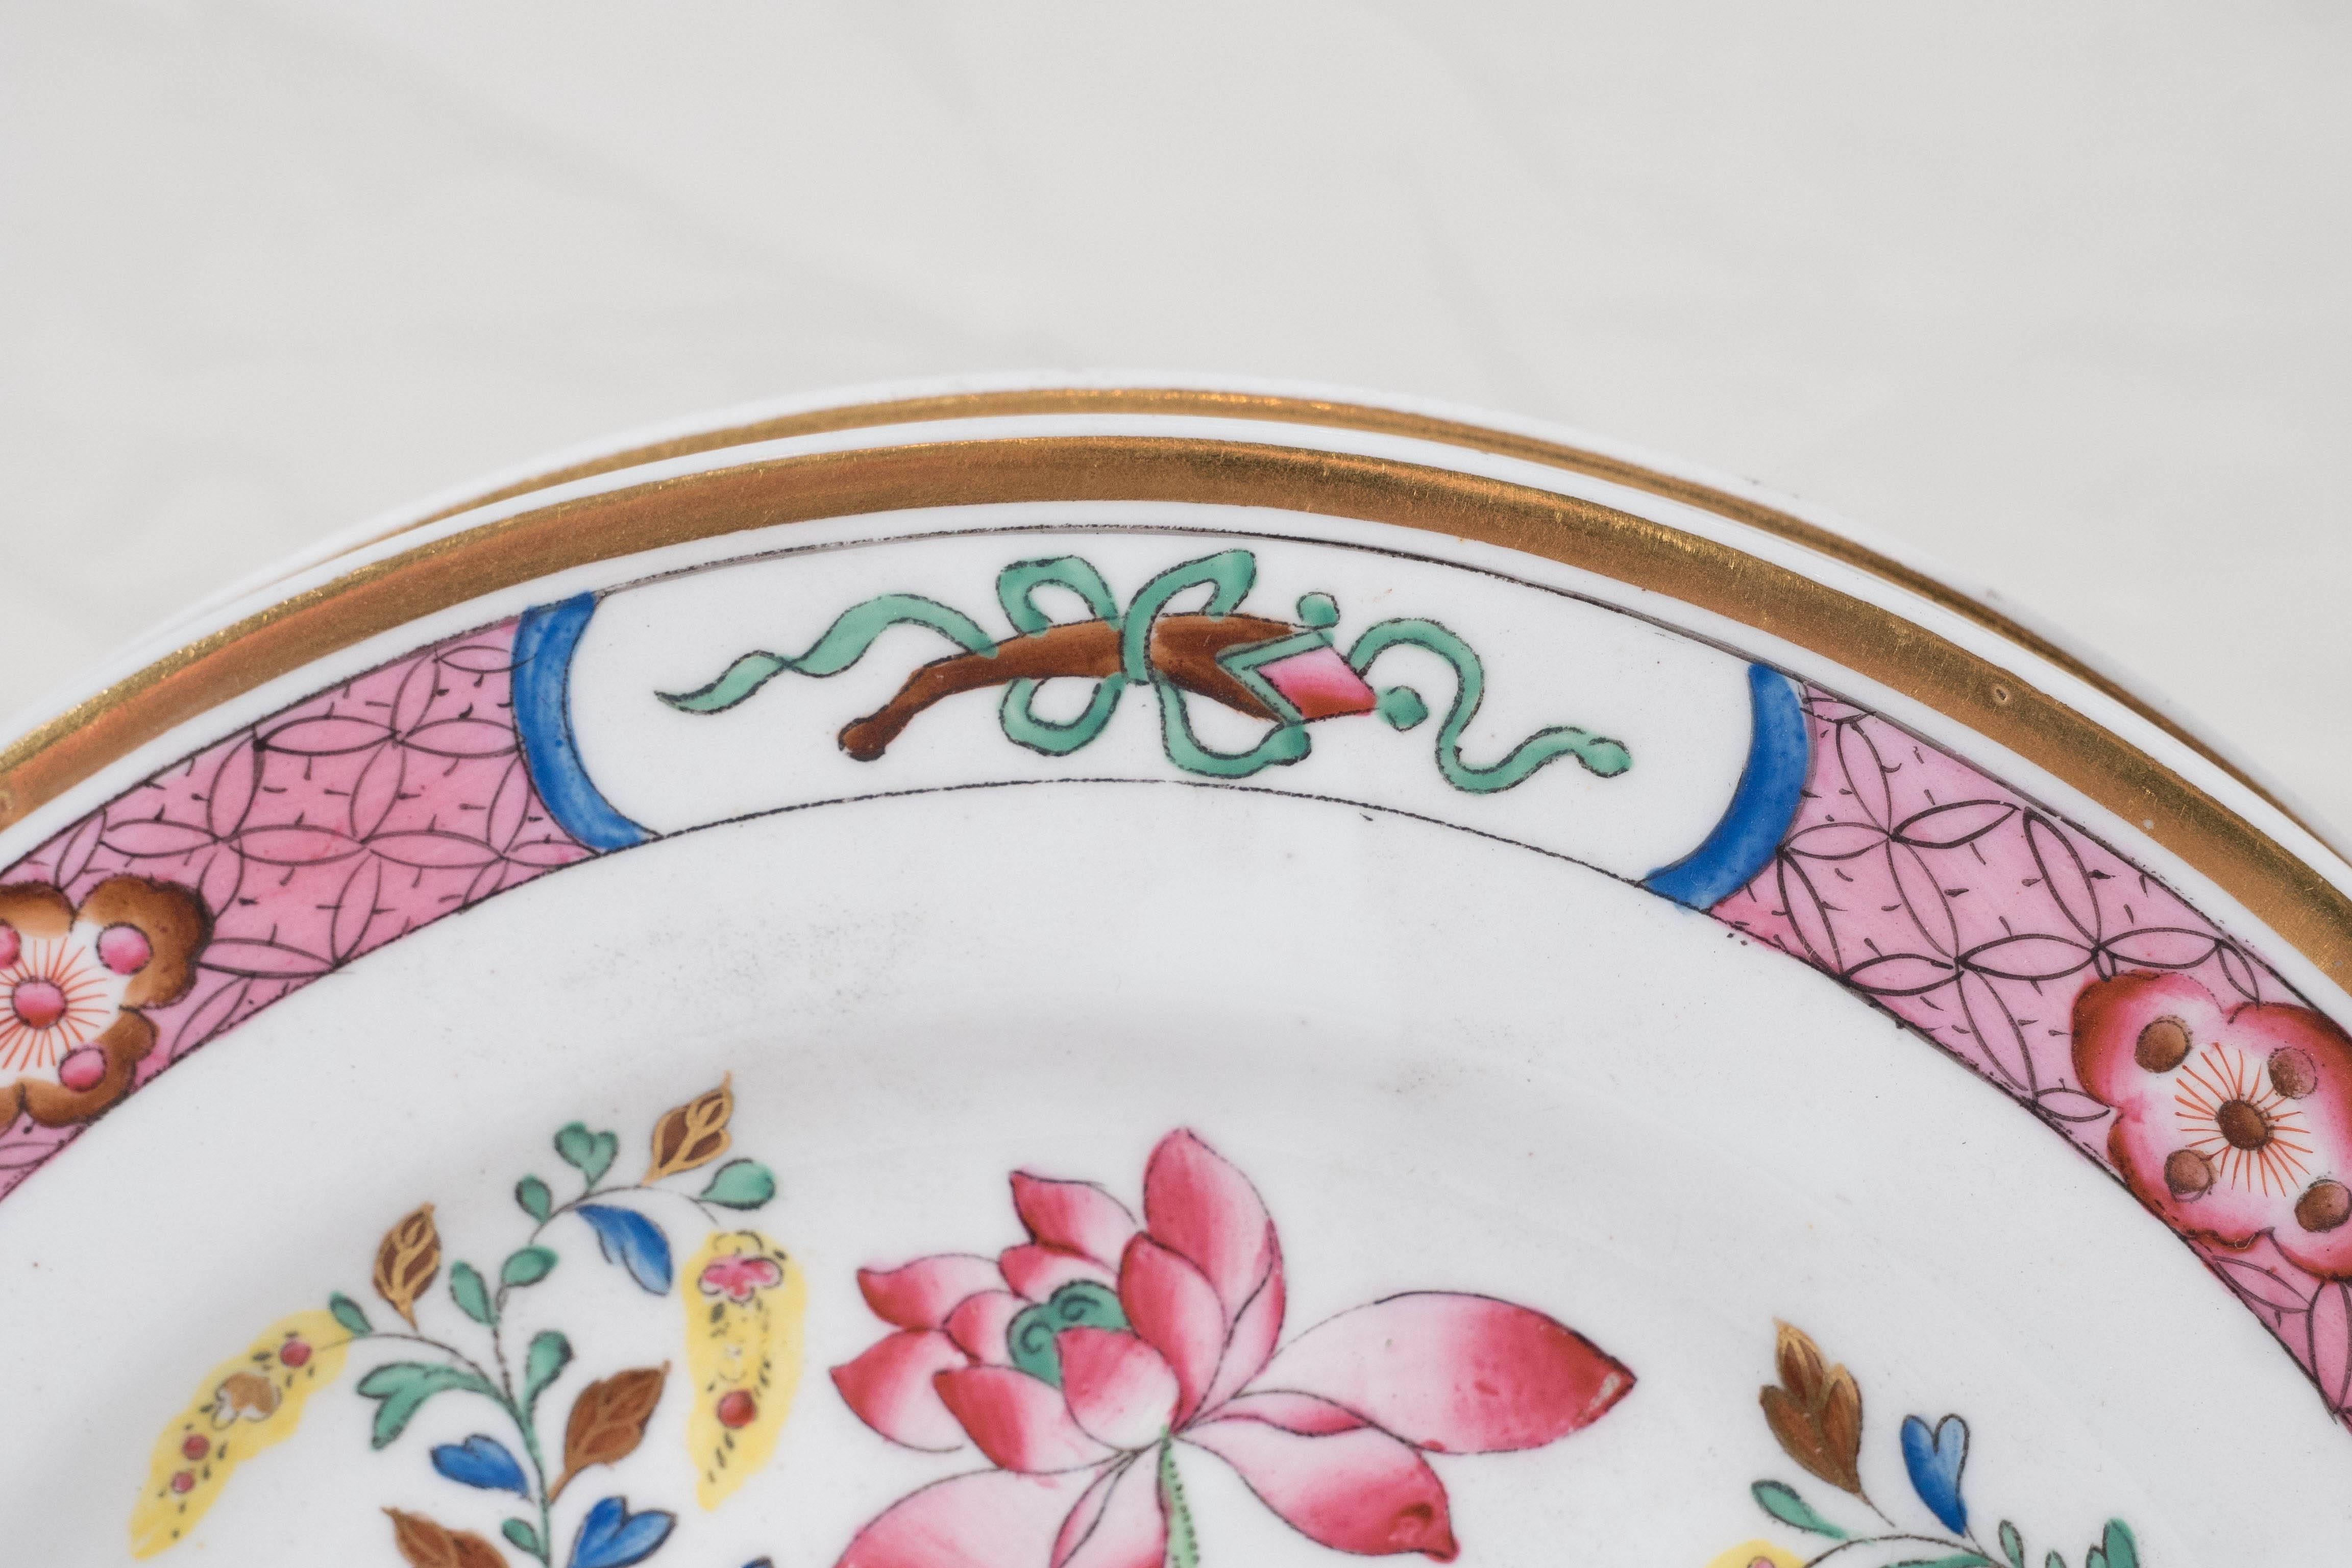 16 rosafarbene antike Porzellanteller mit Mandarin-Enten-Muster aus der Zeit um 1820 (Englisch)